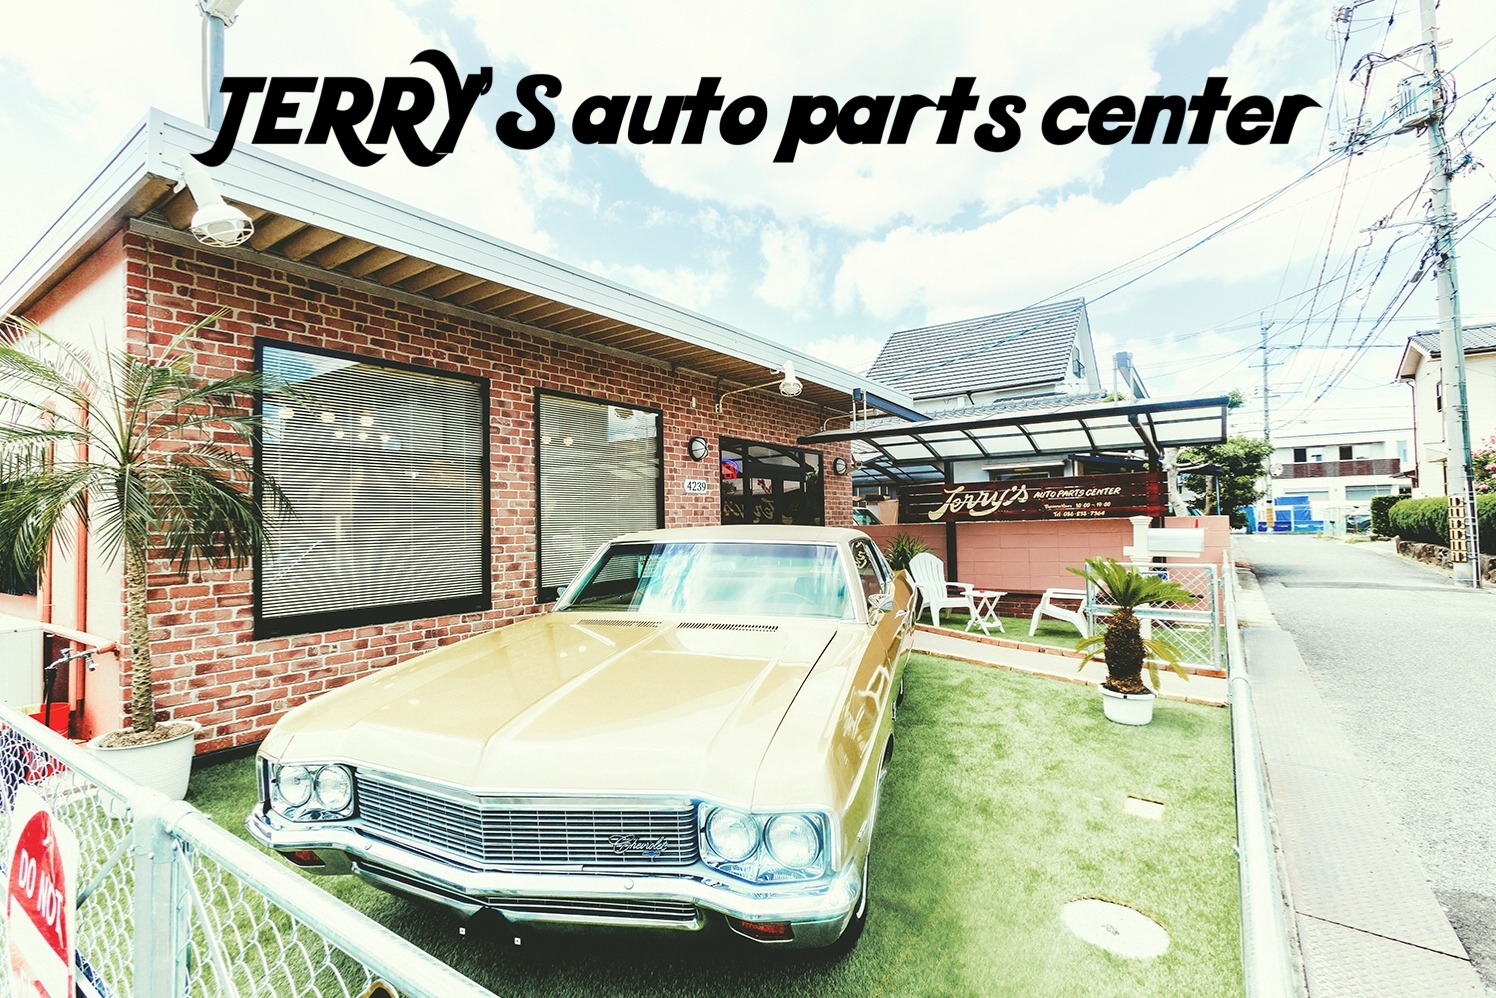 JERRY'S auto parts center